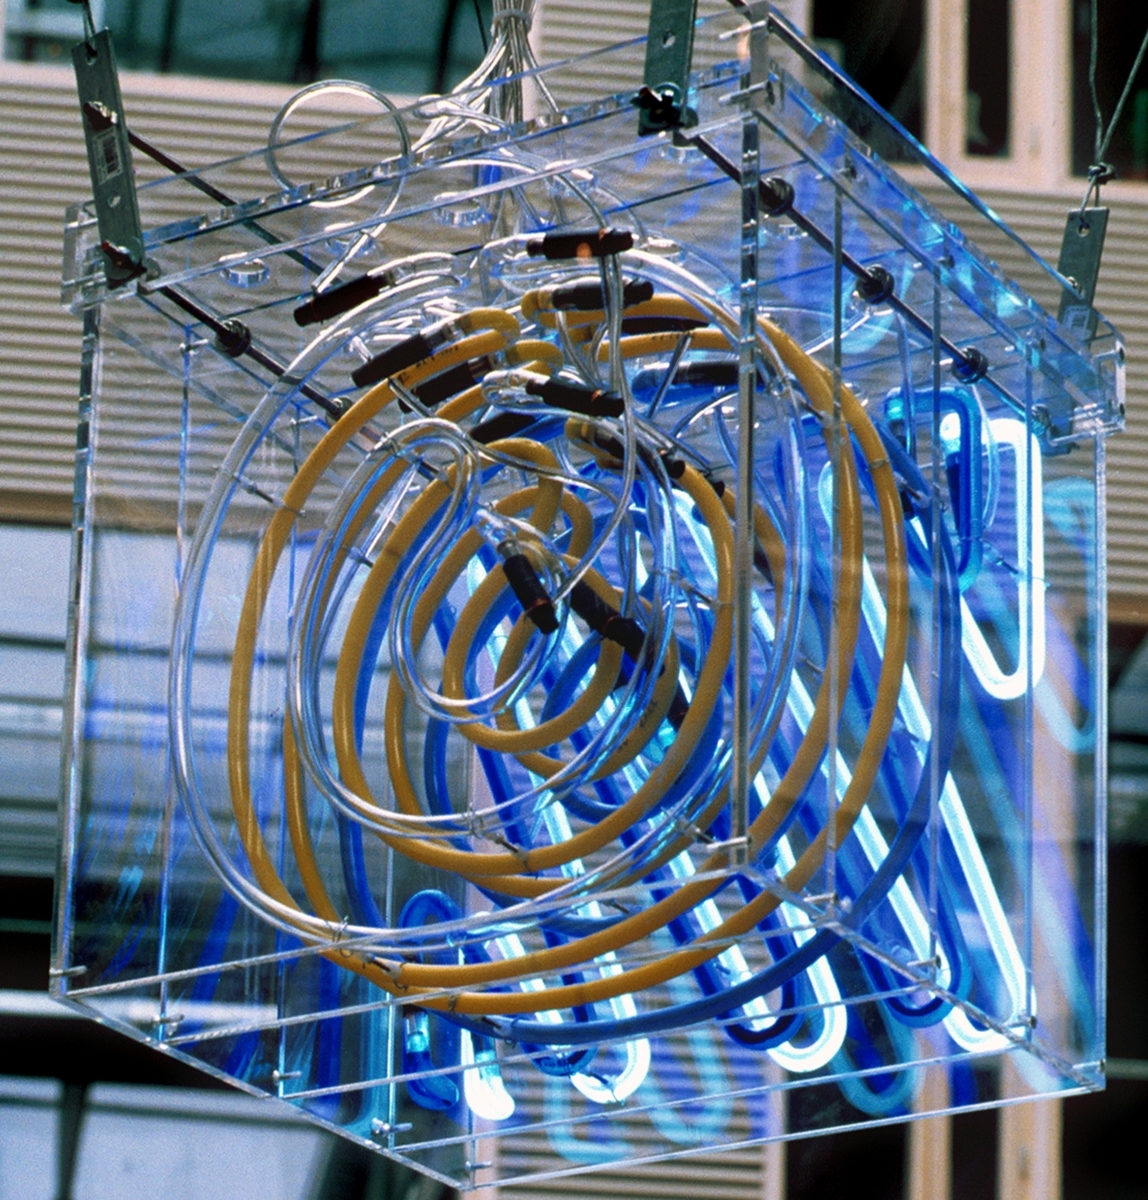 Billedhuggeren Carl Nesjar og komponisten Arne Nordheim har i samarbeid laget installasjonen Gilde på Gløshaugen som består av elektronisk lyd og lys. Kunsten er inspirert av byggets form og aktiviteten i bygget. Carl Nesjars lysinstallasjoner omfatter 7 kuber i plexiglass med 6 neonrør i hver. Nordheims lydinstallasjoner oppleves i samspill med Nesjars pulserende neonkuber og påvirkes av ulike faktorer som temperatur, vindhastighet, dagslys, regn og antall mennesker i bygget. Lydinstallasjonen er delt i ulike sekvenser og fordelingshastigheten av lyder rundt i bygget er bestemt av trafikken forbi tellerne. Jo flere mennesker som passerer tellerne innenfor et visst tidsrom, jo hurtigere forflytter sekvensene seg. Det er definert tre lag med lyd som har en egen romlig distribusjon, og er knyttet til en spesiell fargetone i Nesjars kuber.